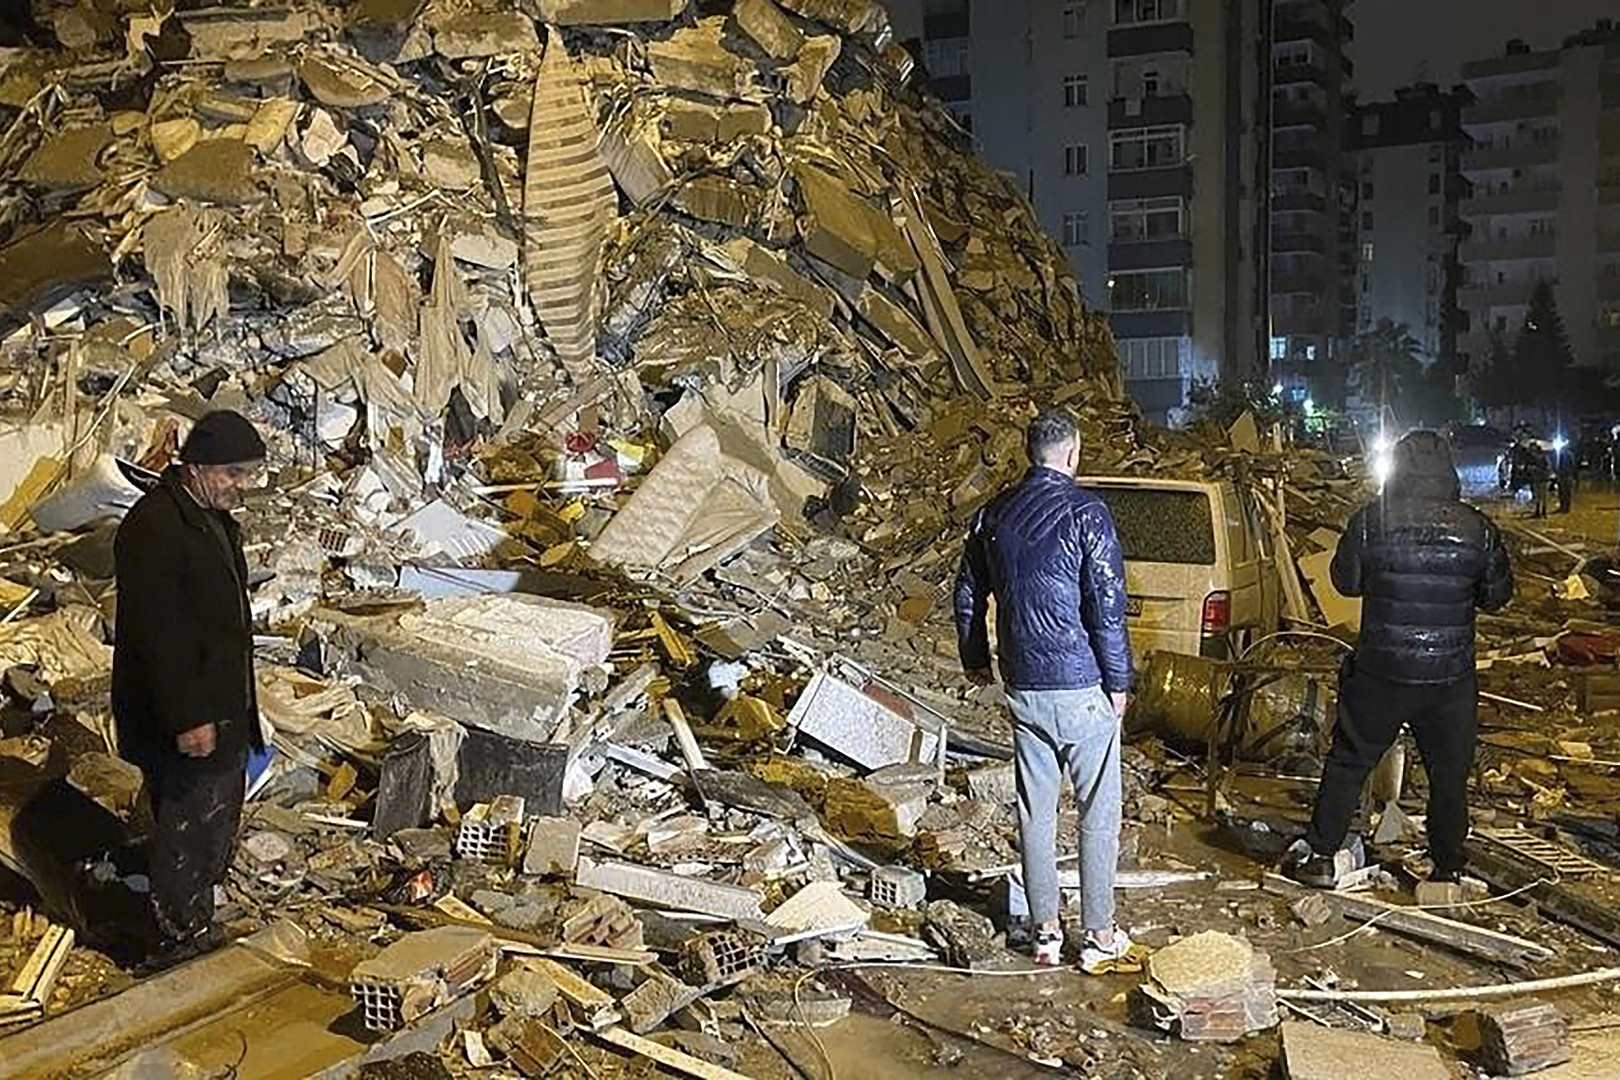 زلزال ضخم يضرب حدود دولة عربية